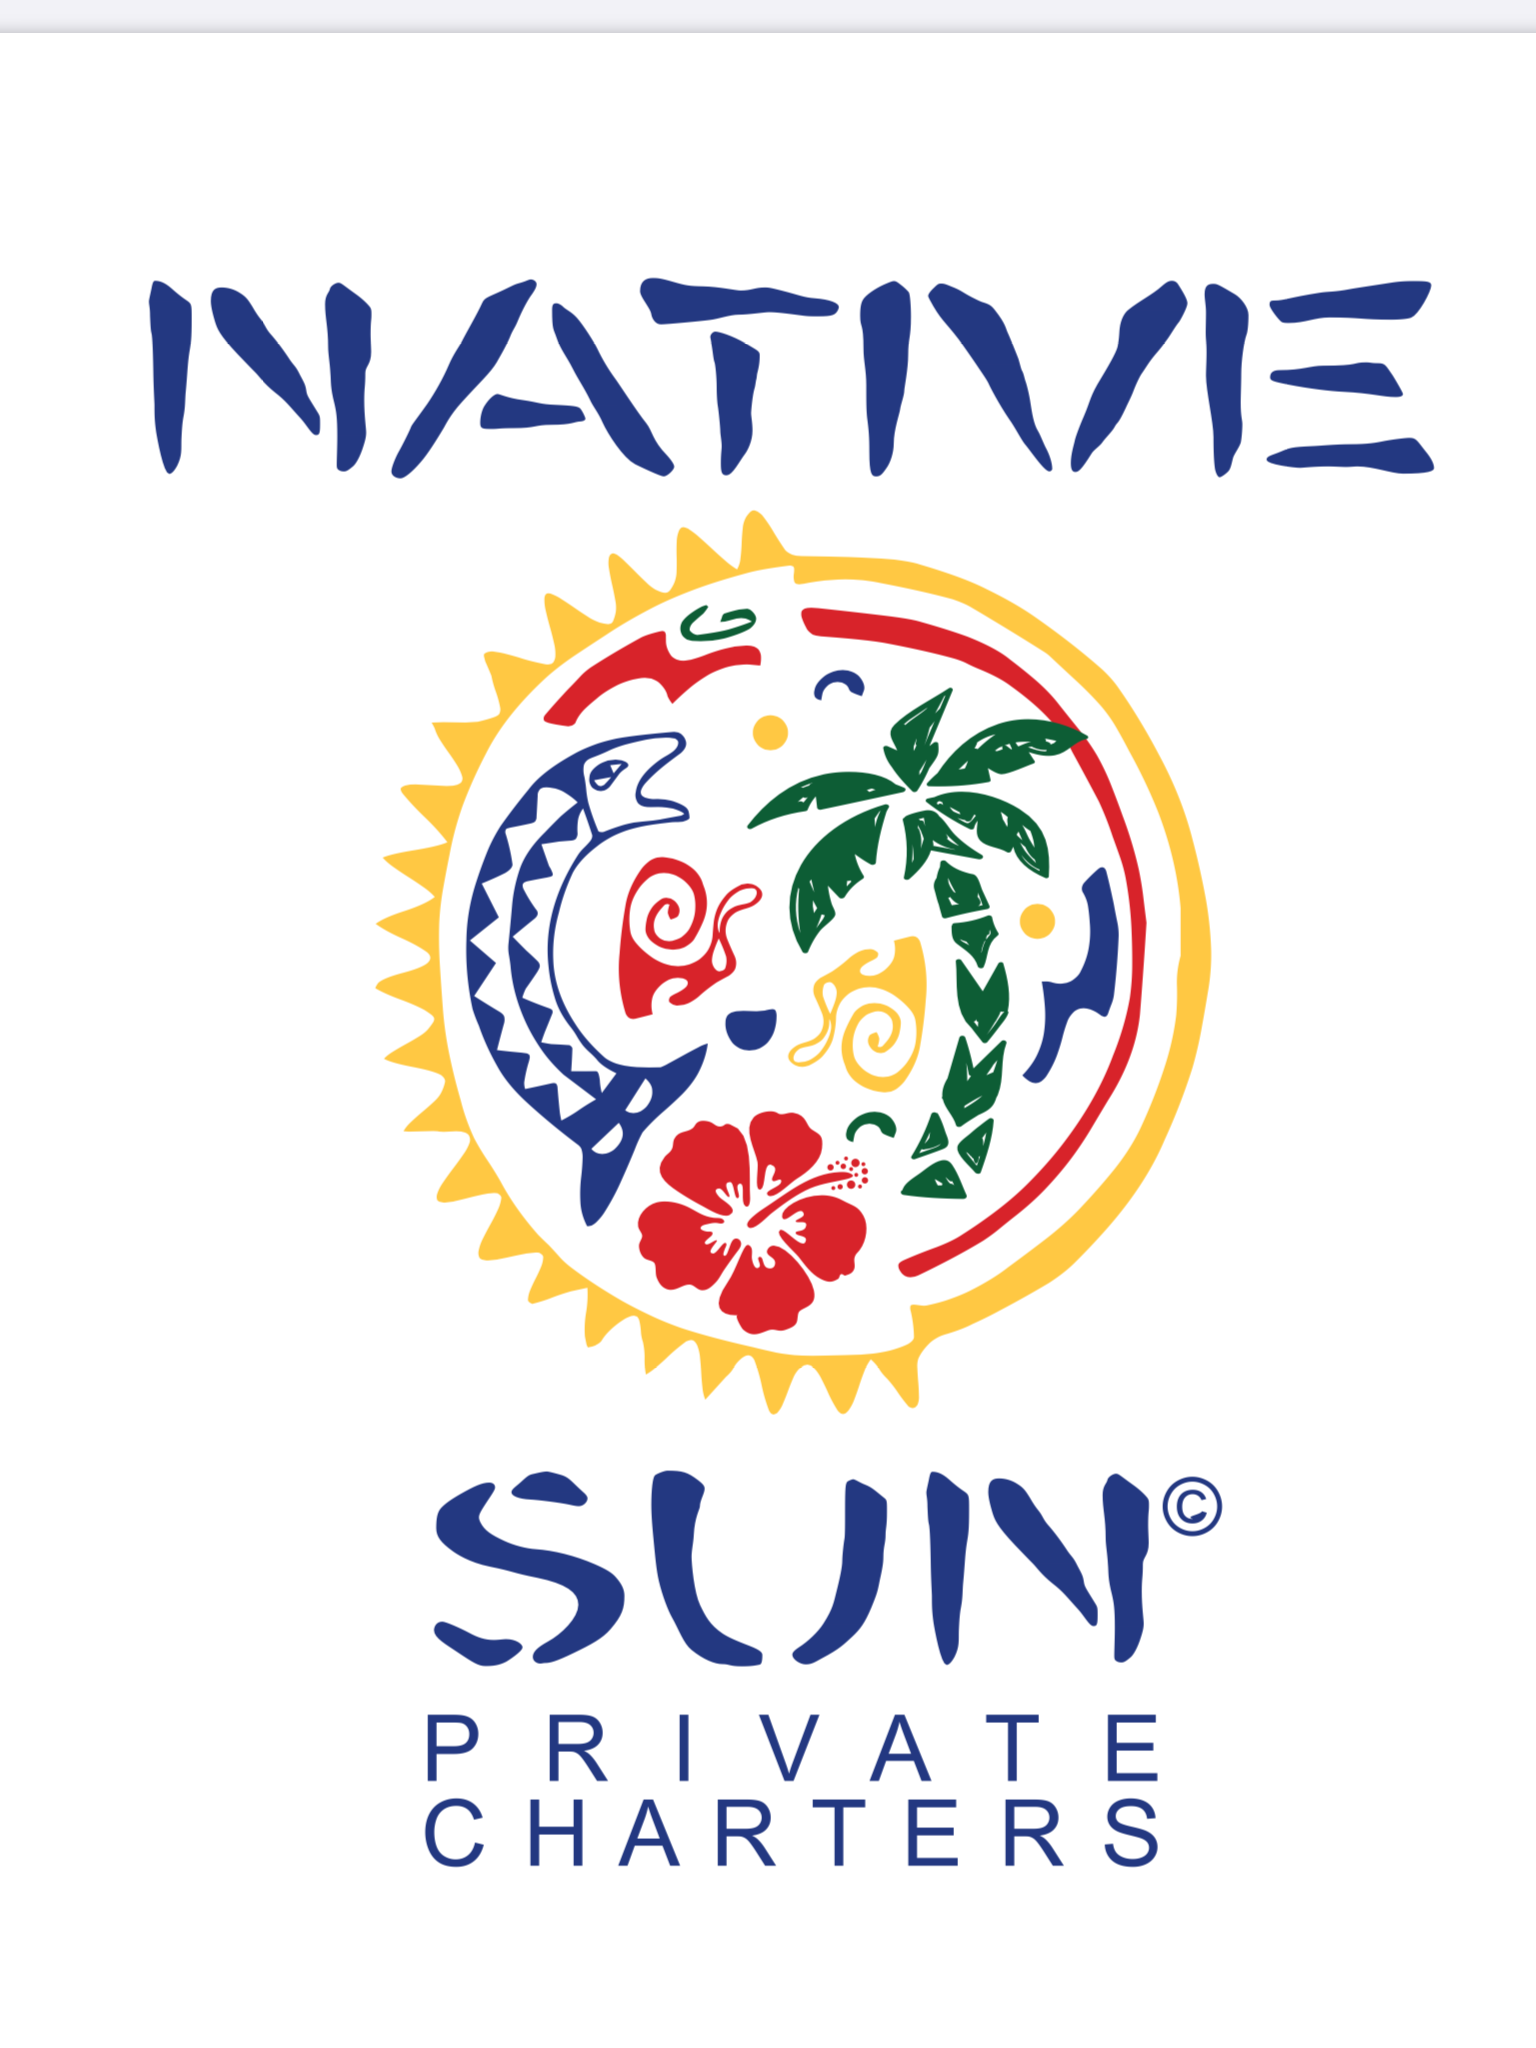 Native Sun Charters 